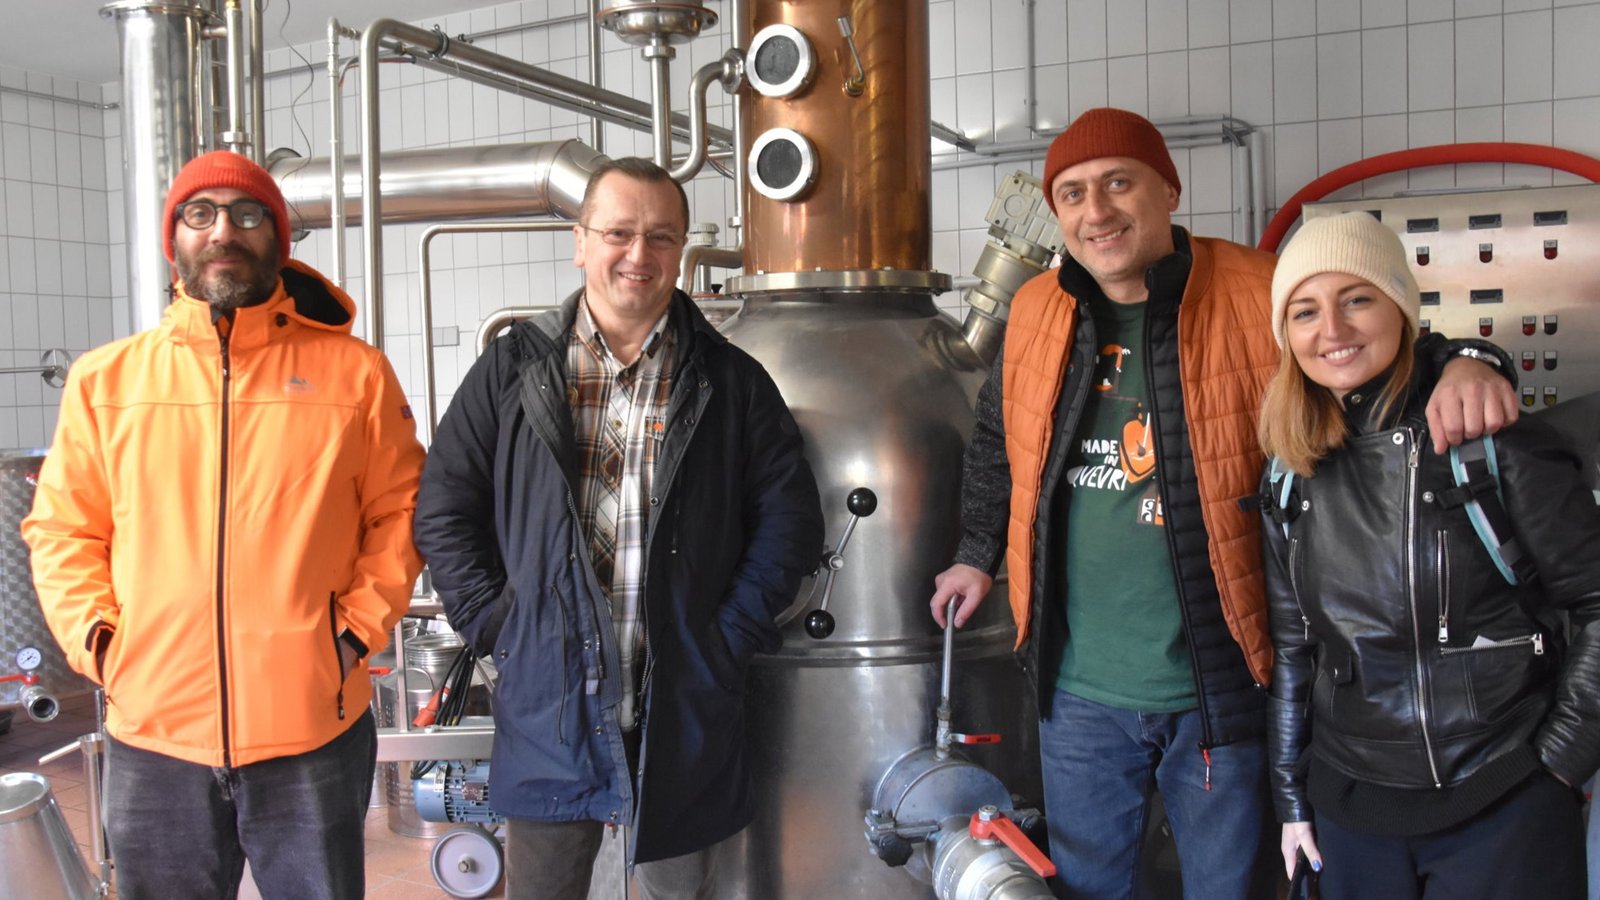 Brenner und Brauer aus Georgien zu Gast bei Wolfgang Fessler, um sich über das Brennwesen und die Getreideverarbeitung in der Fessler Mühle und deren Destillerie in Sersheim zu informieren. Georgien gilt nicht nur als das Ursprungsland des Weines, sondern hat auch hervorragende Destillerien sowie Brauereien. So waren nun Braumeister Kachaber Gurieli, Meisterbräu Tbilisi, und Brennmeister Nikoloz Kandelaki mit Giorgi Tevzadze, Inhaber der Riravo Destillerie aus Tbilisi, zusammen mit Sophie Kobaidze zu einem intensiven Gedankenaustausch in Sersheim und Deutschland unterwegs. Schnell war klar,dass es hier einige interessante Verbindungen zwischen den beiden Destillerien geben kann, so den Austausch von Fässern um jeweils ein regionales Destillat einzulegen oder eventuell zusammen einen Blend Whisky herzustellen. Vereinbart wurde bereits, dass die Georgier mit einem Stand am 2. Juli dieses Jahres zum 4. Glencoe Swabian Whiskyday nach Sersheim in die Fessler Mühle kommen. Nun steht ein Gegenbesuch in Georgien an. Foto: p